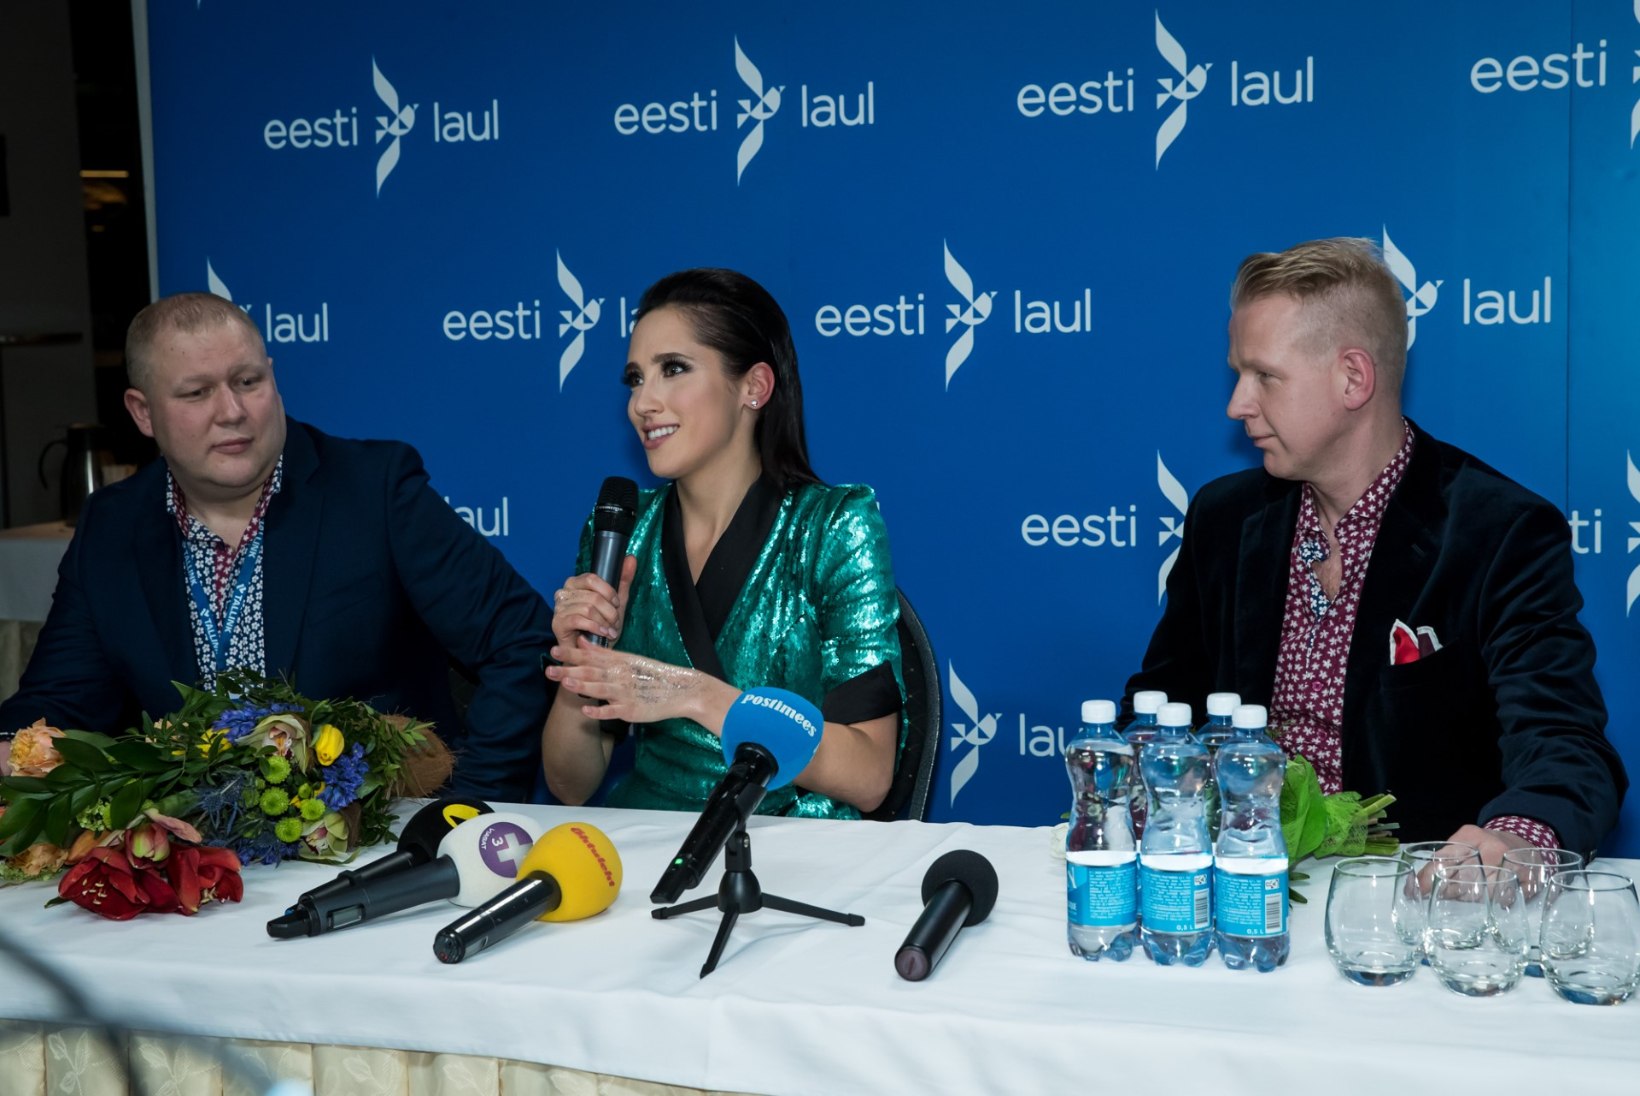 FOTOD | Elina Nechayeva emotsioonid pärast "Eesti laulu" võitu